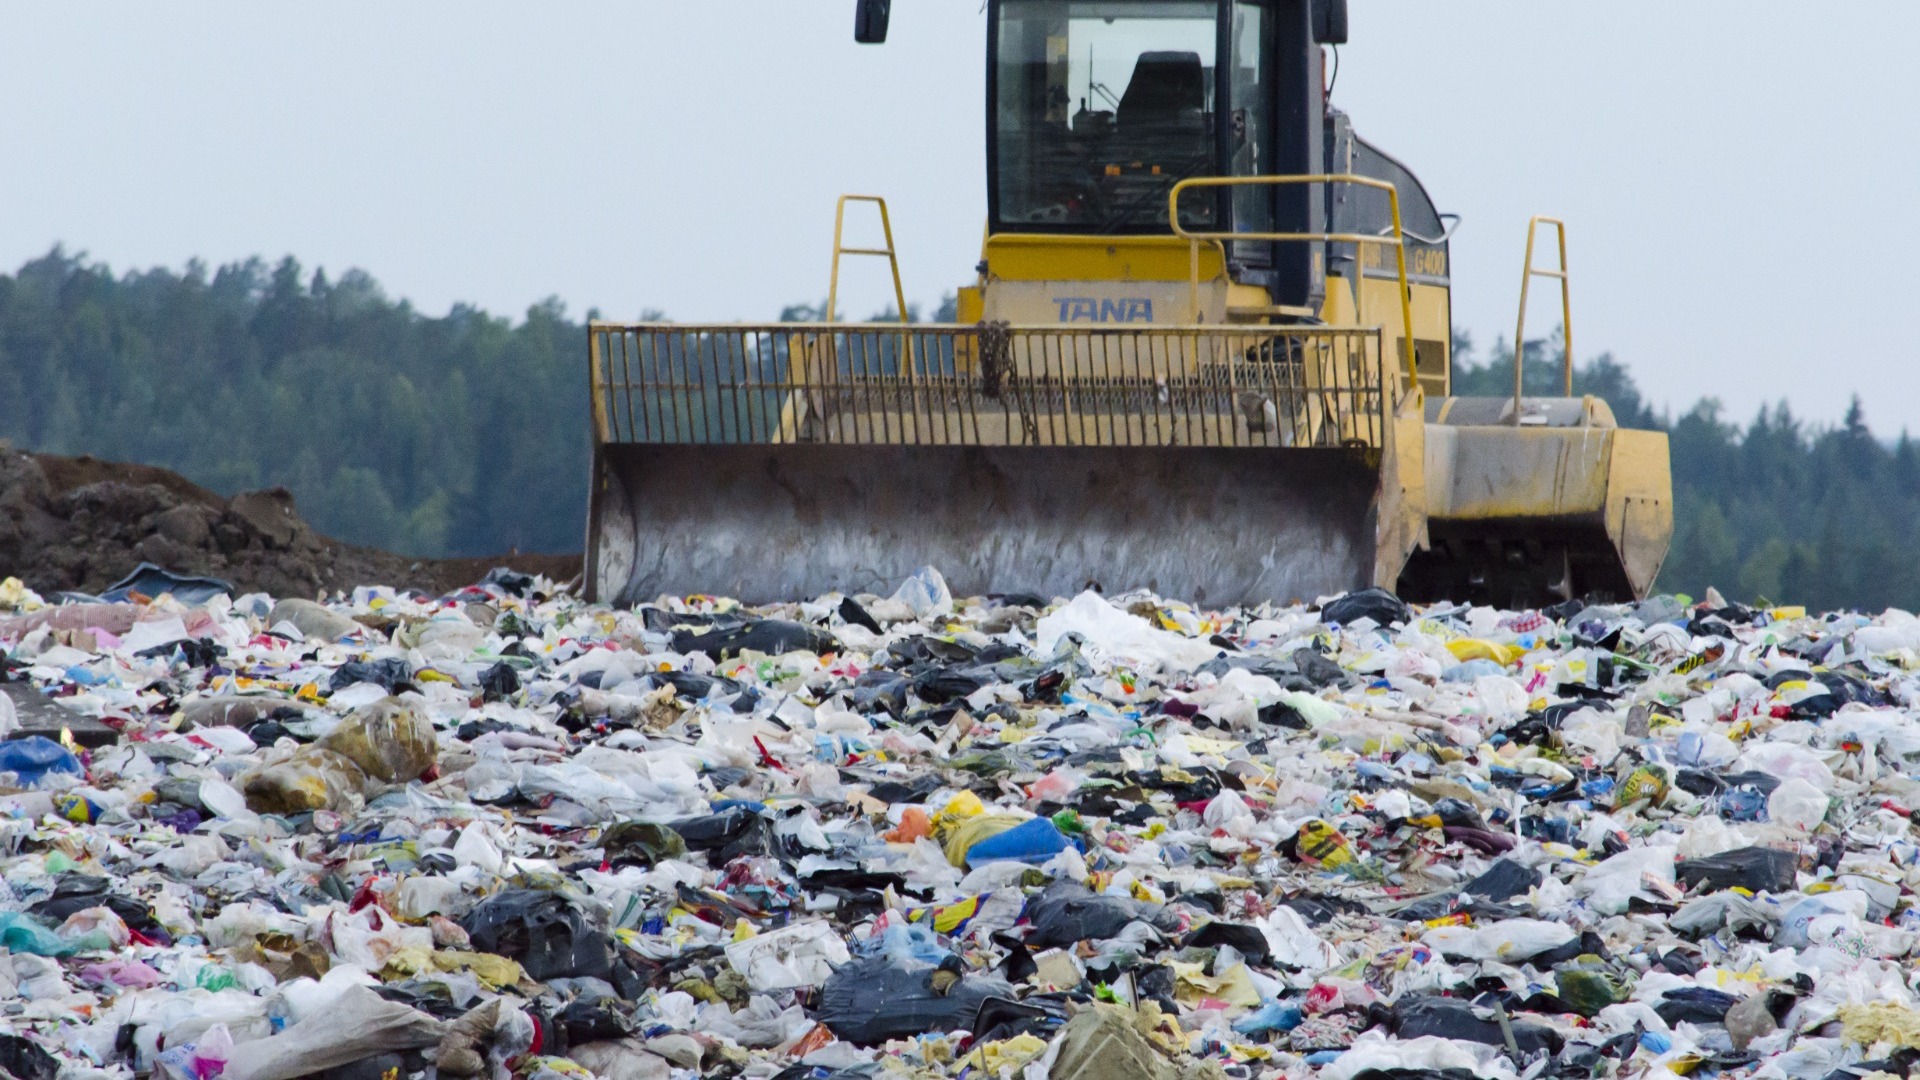 РЭО намерен решить проблему переполненных мусорных полигонов Липецка